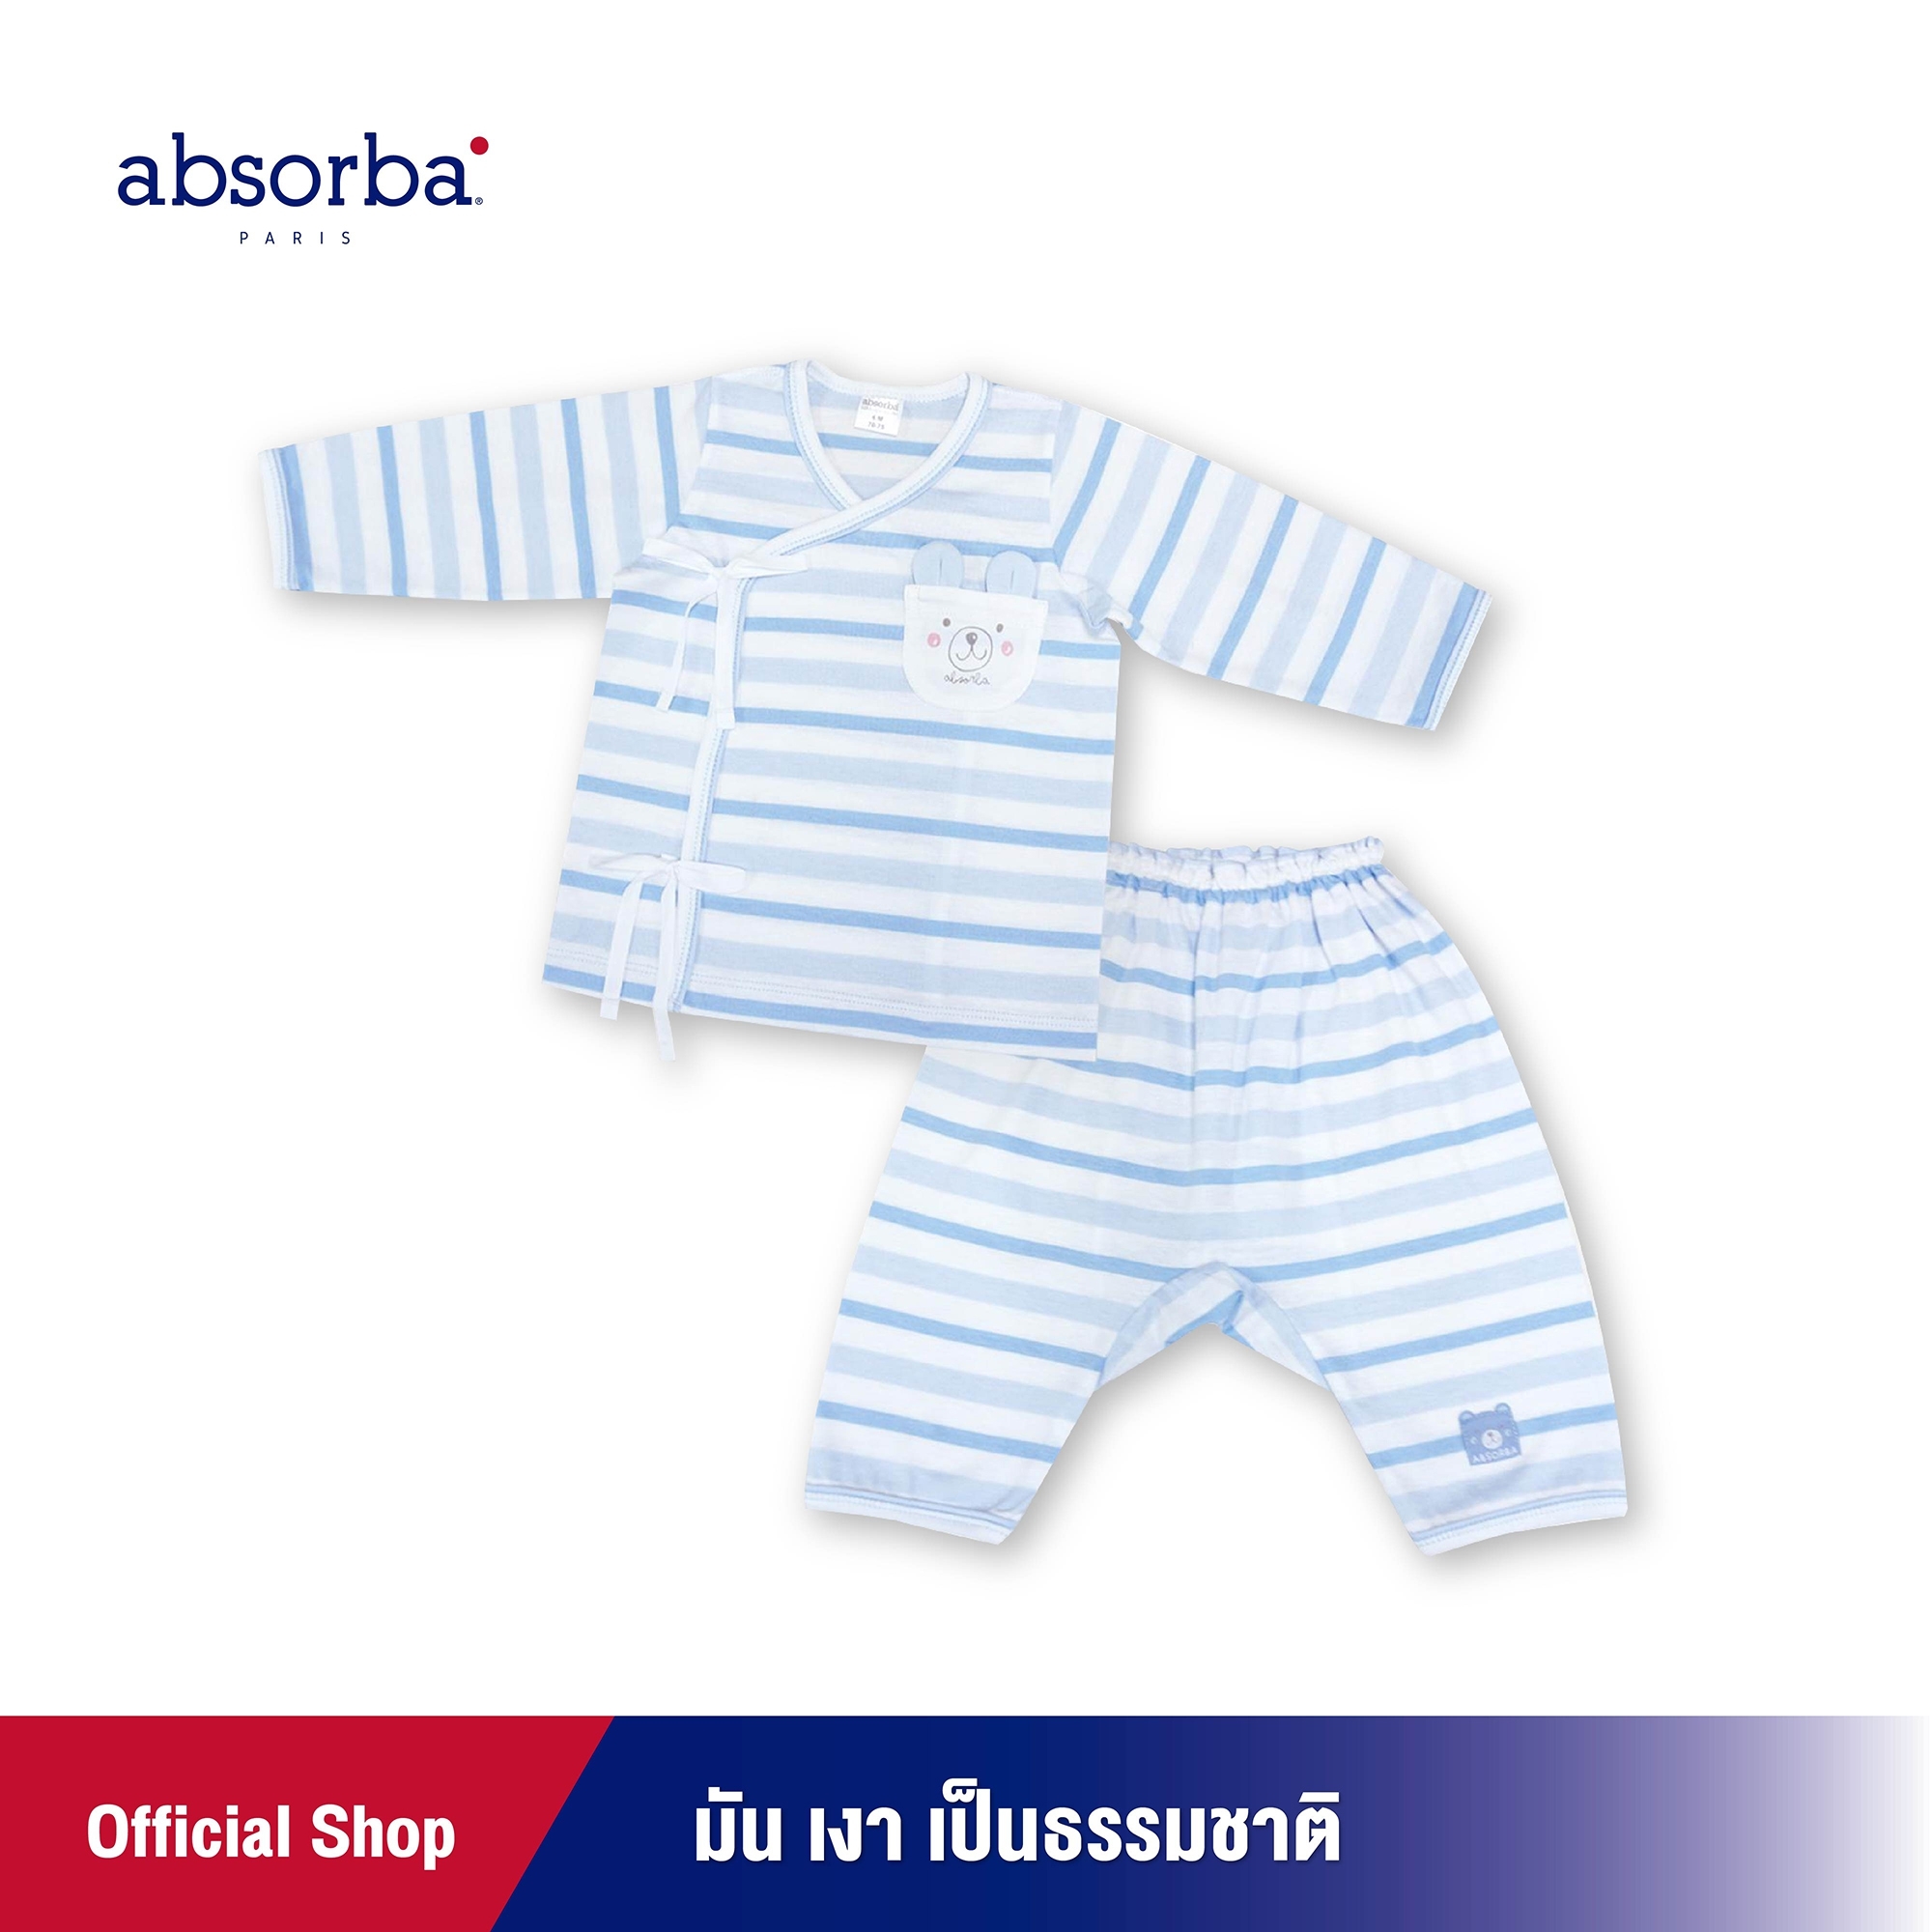 โปรโมชั่น absorba (แอ๊บซอร์บา) ชุดเสื้อป้ายแขนยาวเด็ก หรือชุดเสื้อผูกหน้าแขนยาวเด็ก ลายริ้วสีฟ้า สำหรับเด็กแรกเกิด ถึง 3 เดือน - R1R5002BU